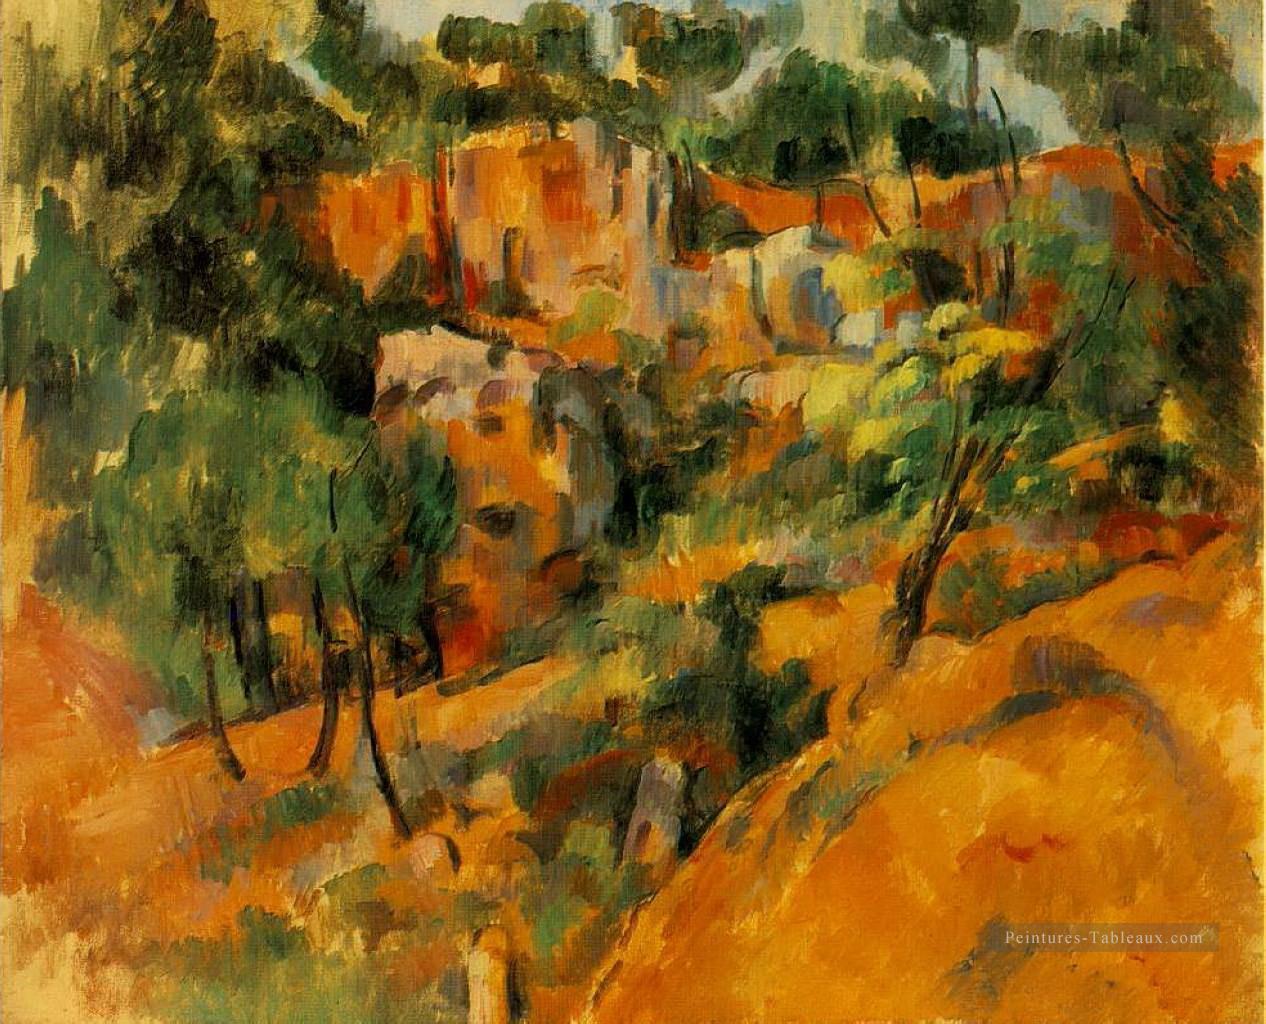 Coin de la carrière Paul Cézanne Peintures à l'huile